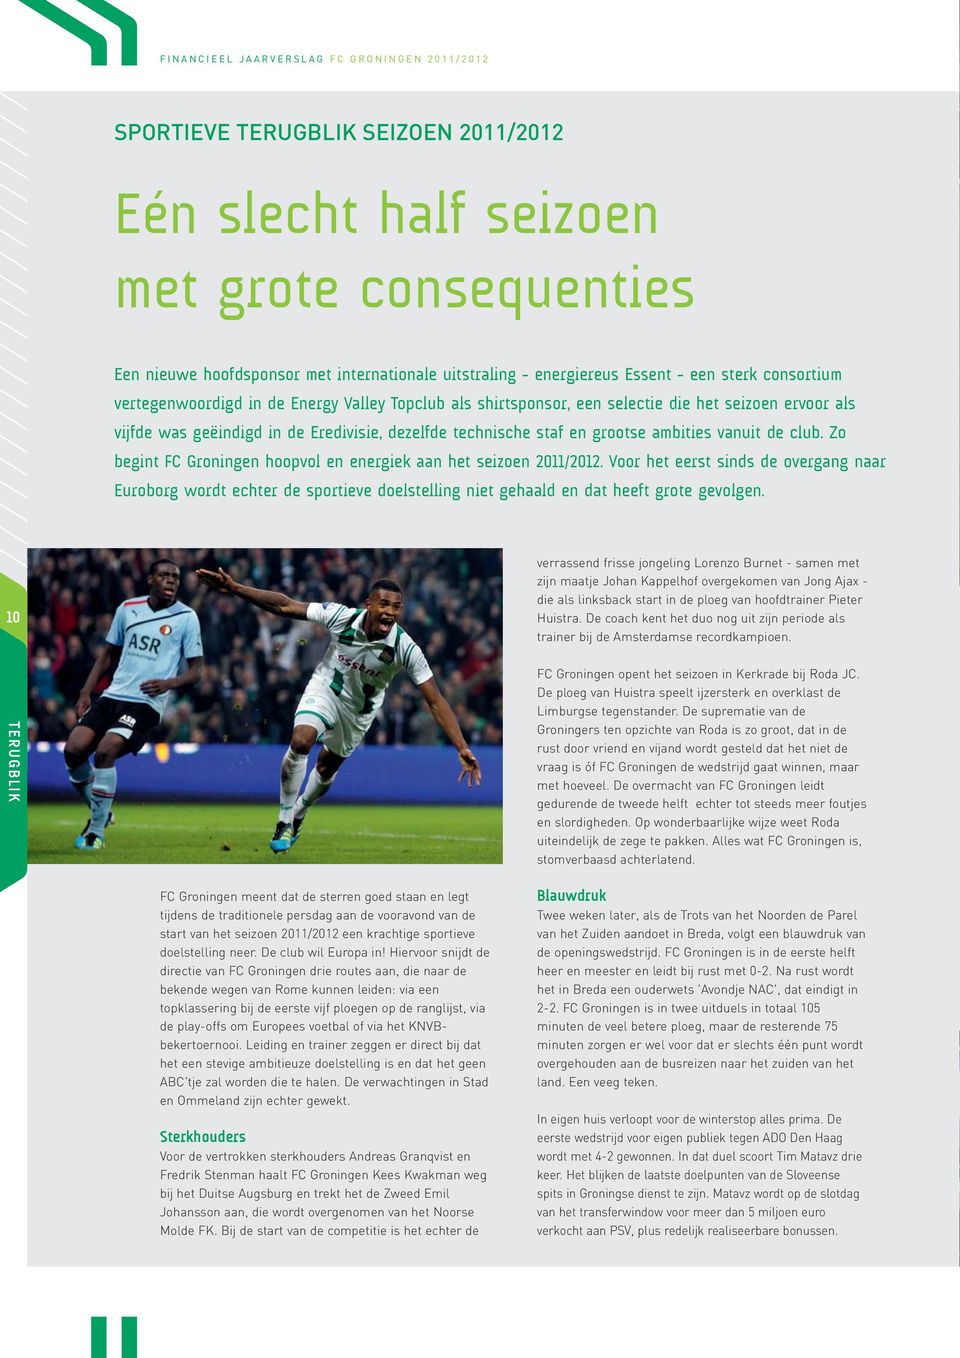 club. Zo begint FC Groningen hoopvol en energiek aan het seizoen 2011/2012.